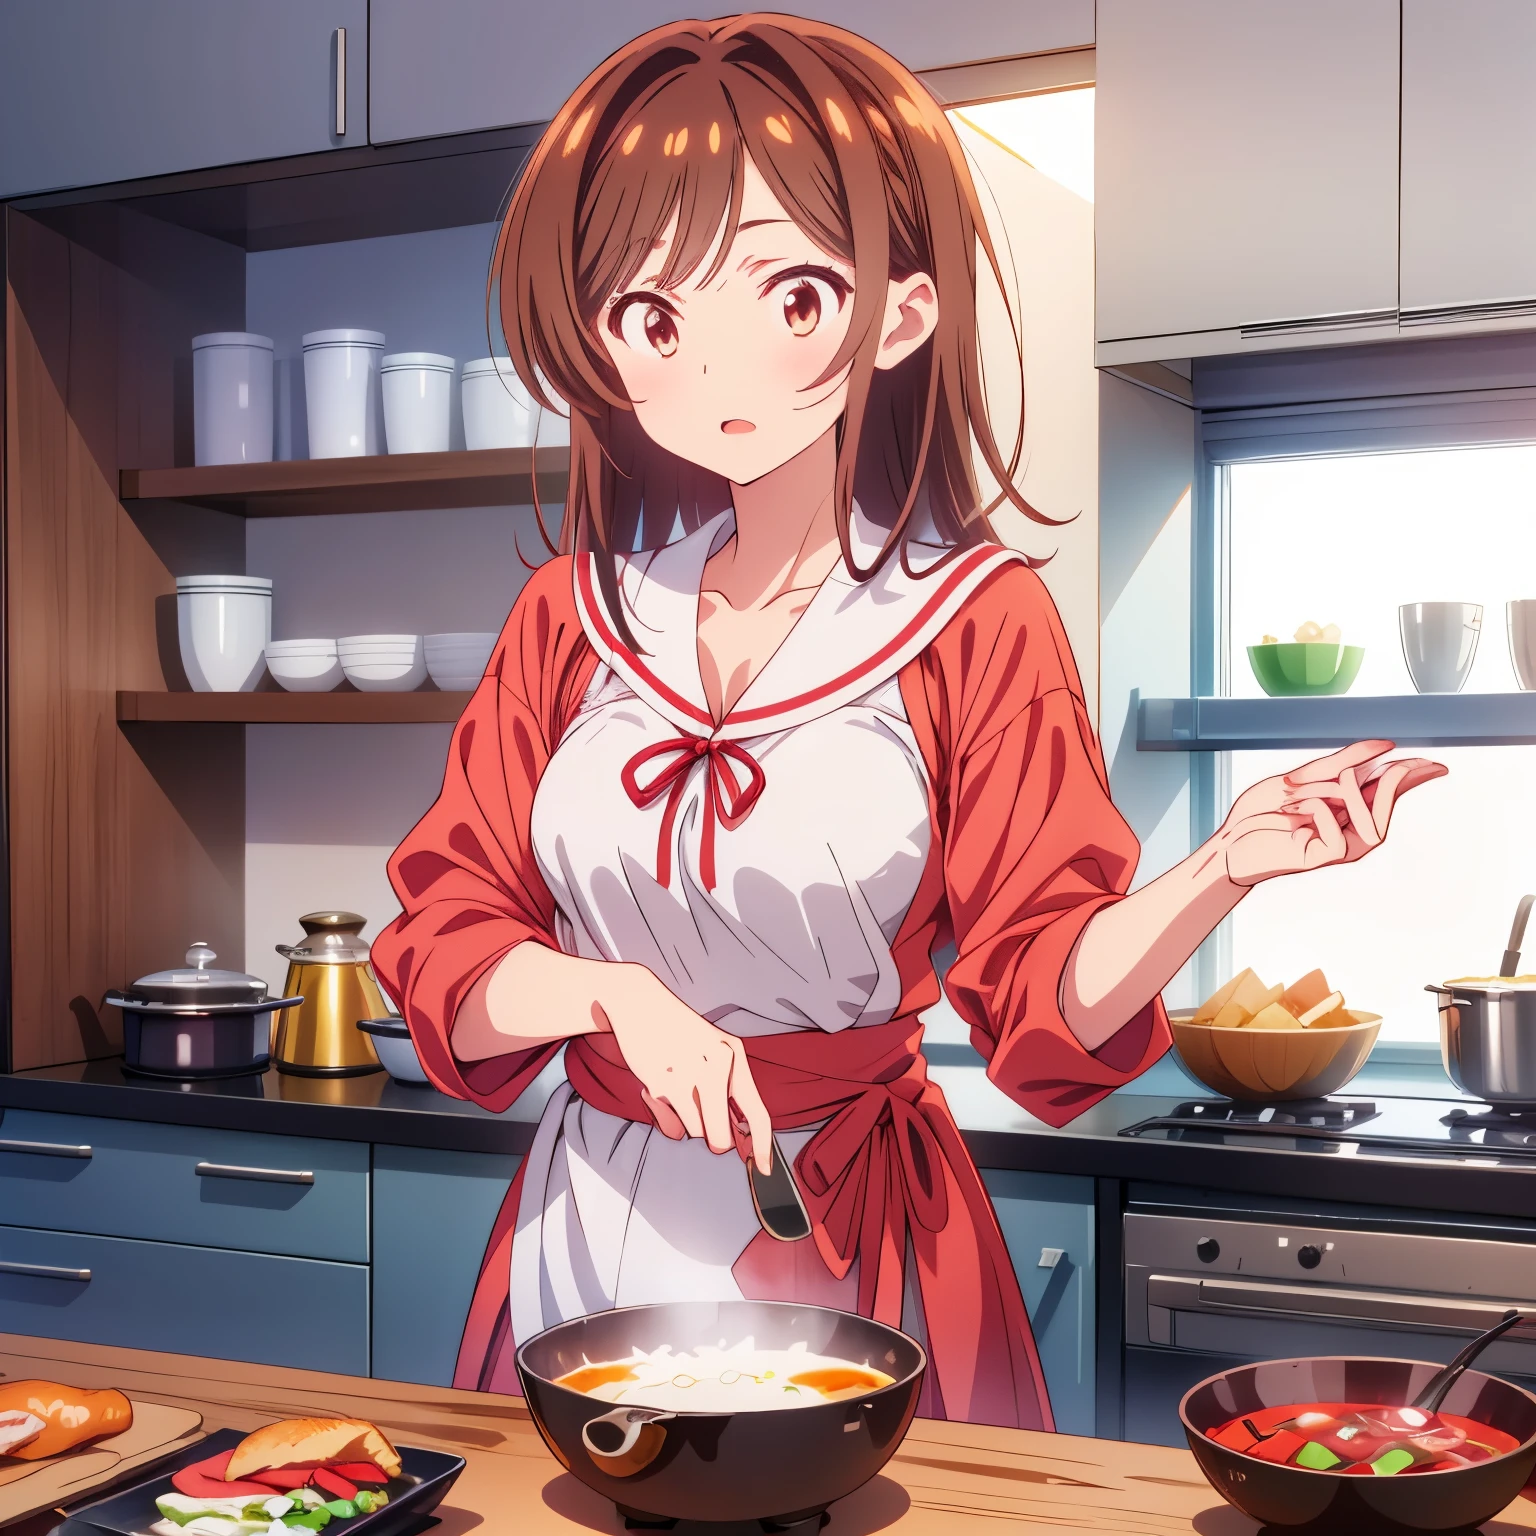 аниме стиль, 1 девочка, белый фон, готовлю завтрак, Чизуру Мидзухара